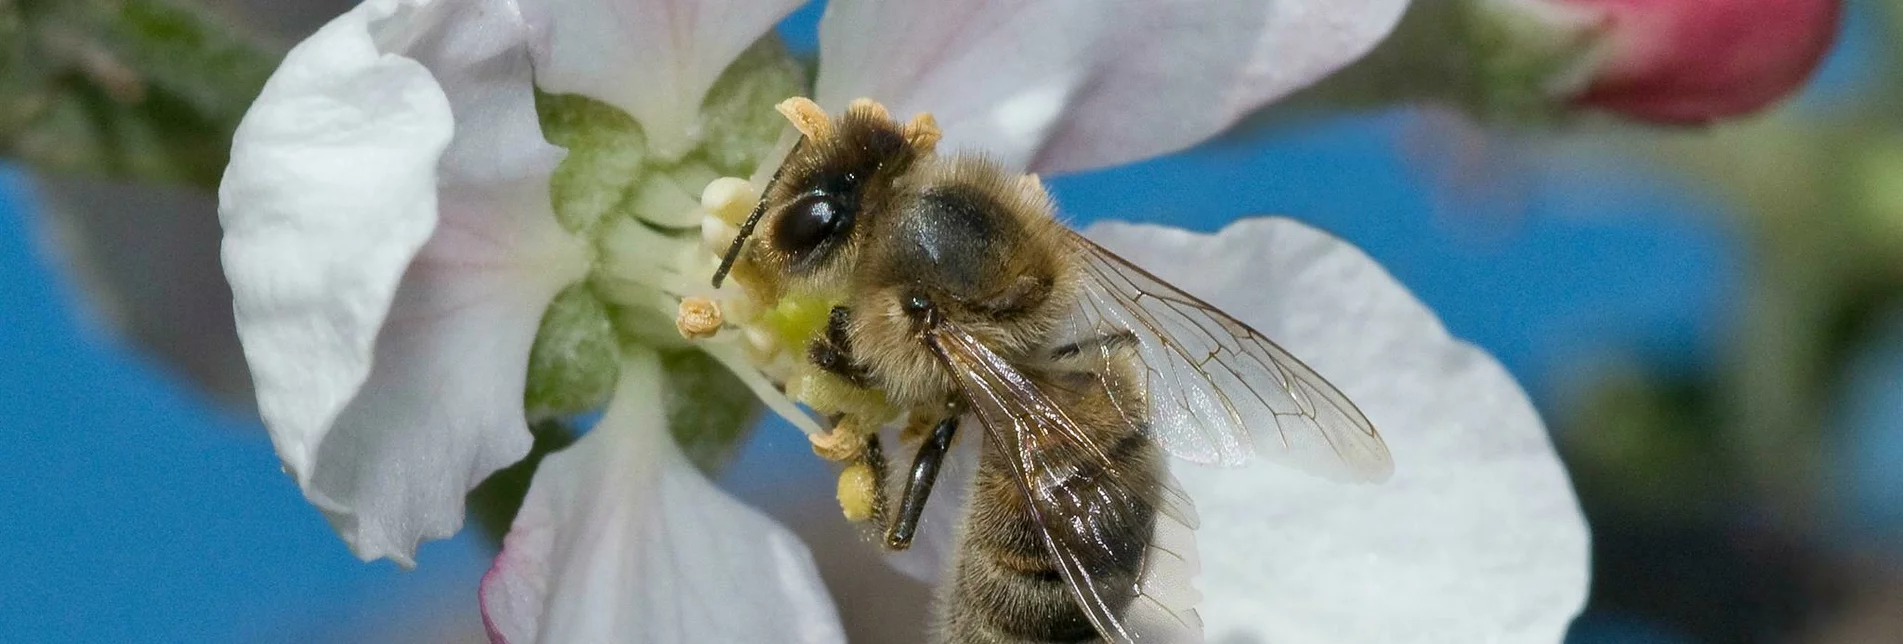 Themen- und Lehrpfad Erlebnisweg Honigbiene, Anger bei Weiz - Touren-Impression #1 | © Tourismusverband Oststeiermark